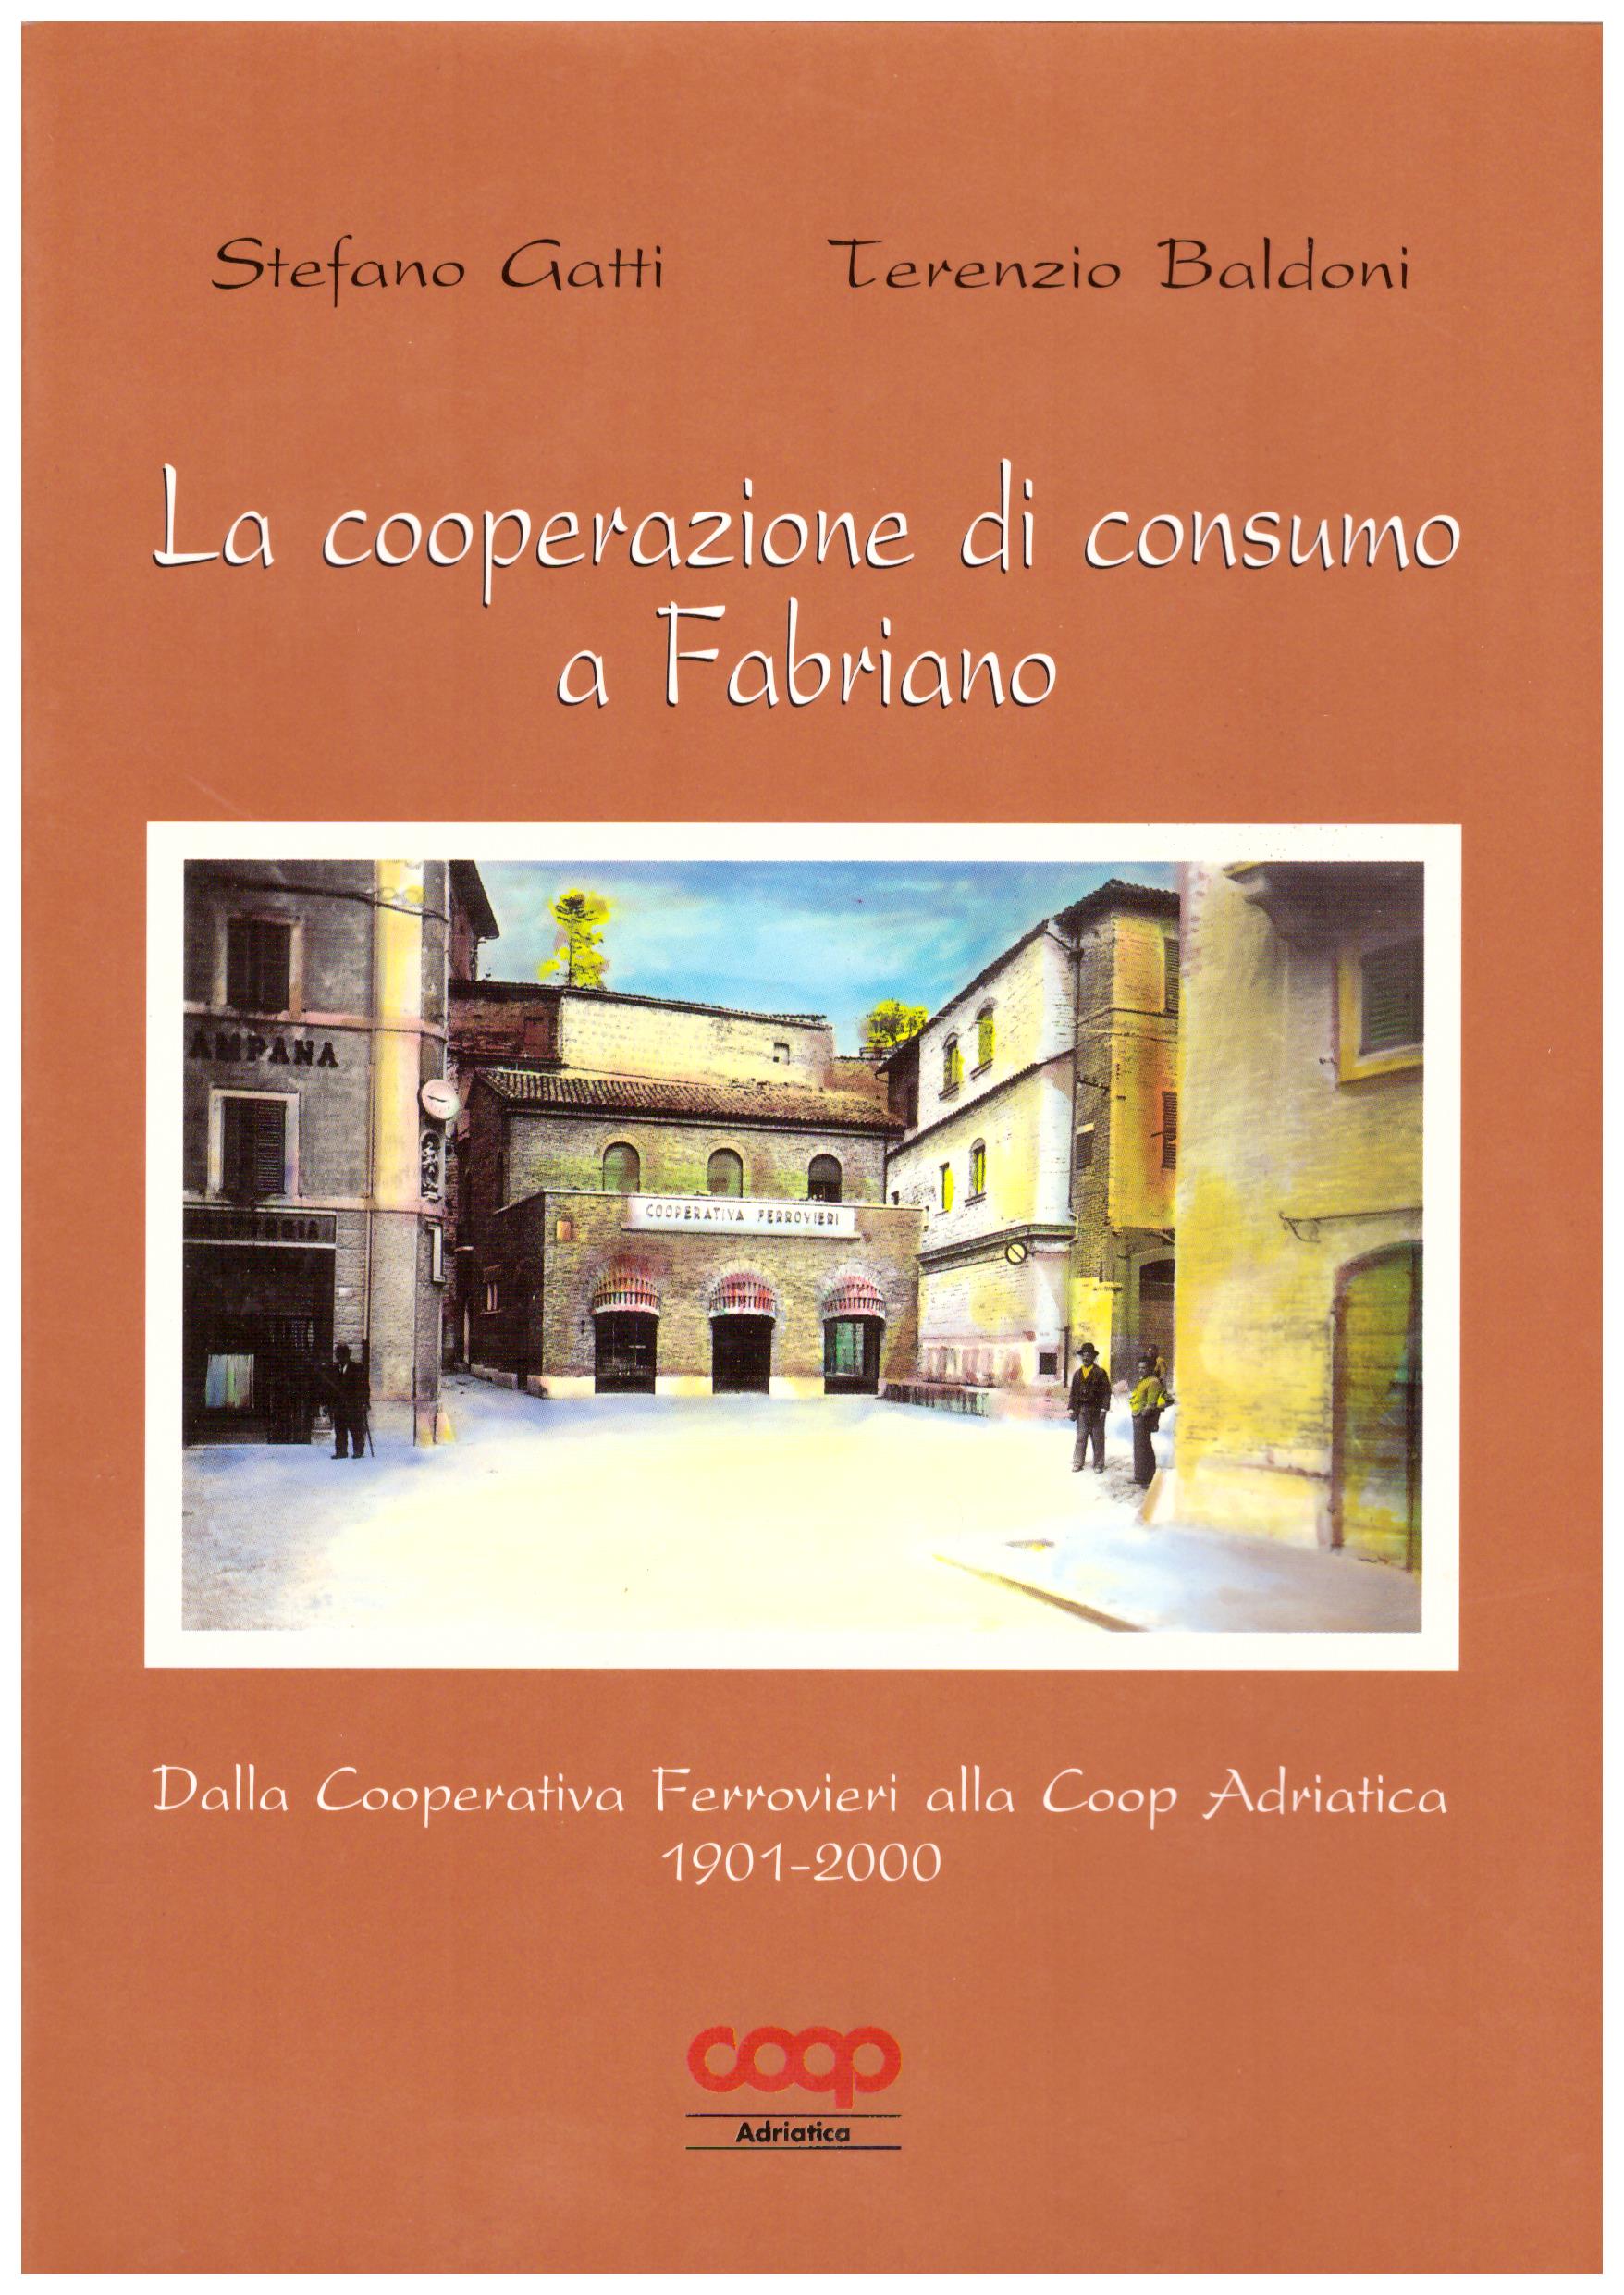 La cooperazione di consumo a Fabriano.